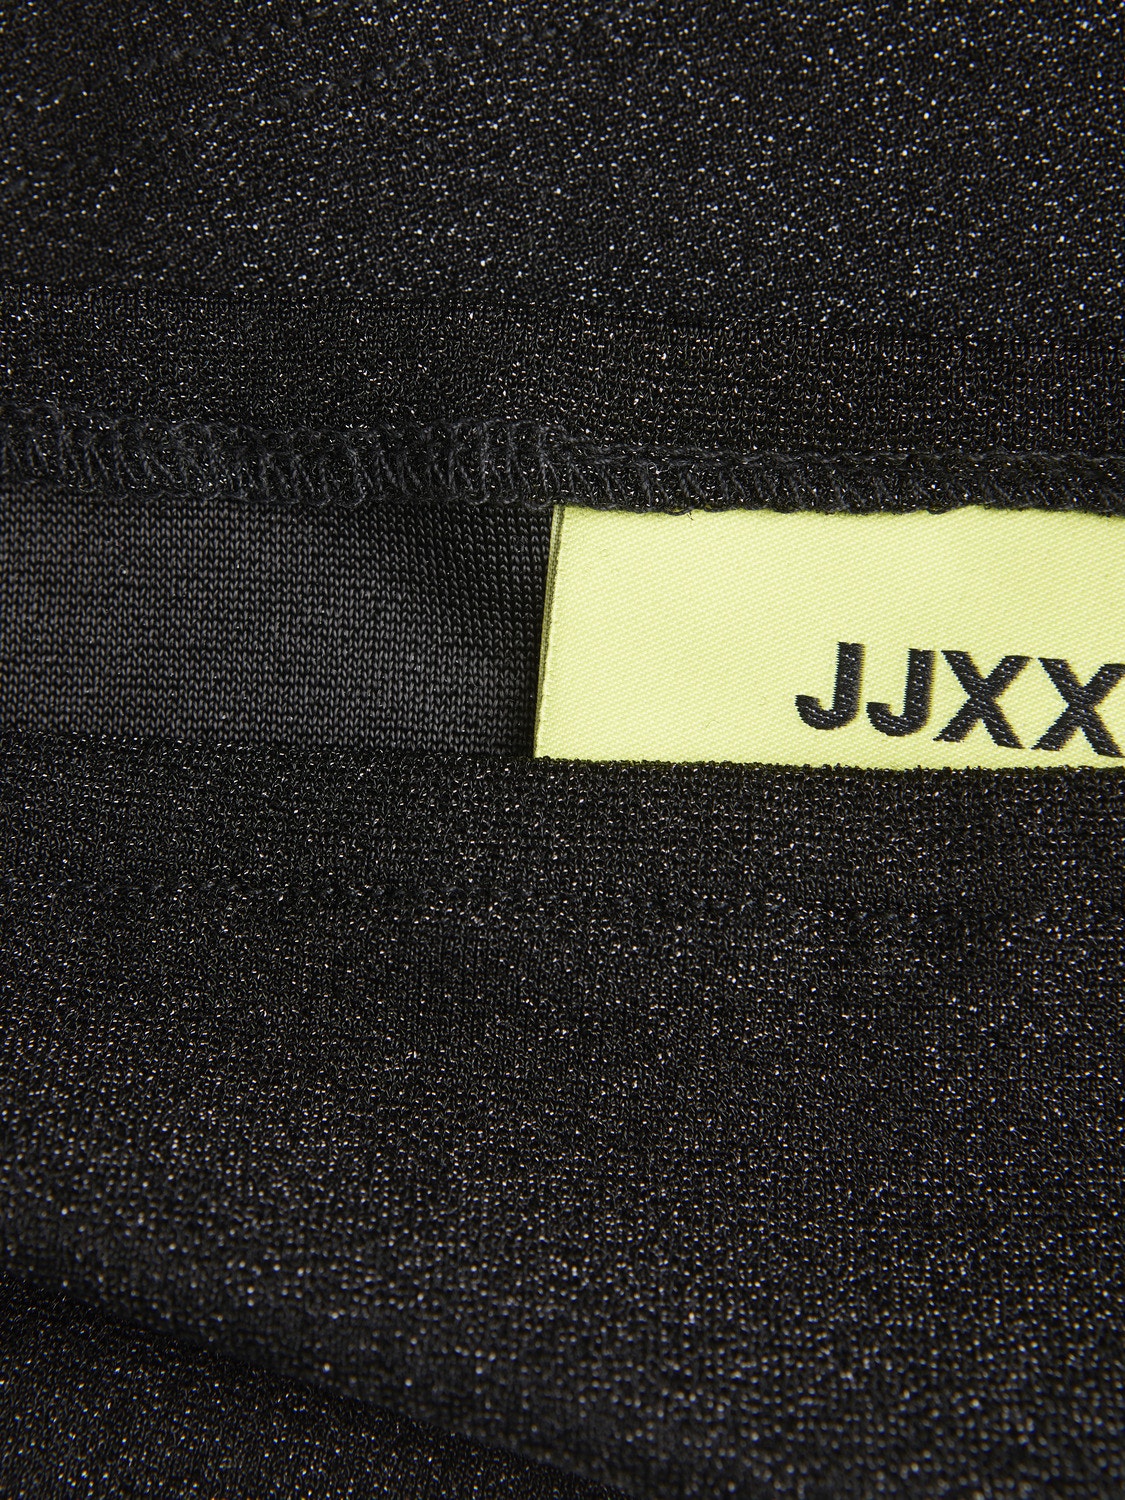 JJXX JXZIA Top -Black - 12246578